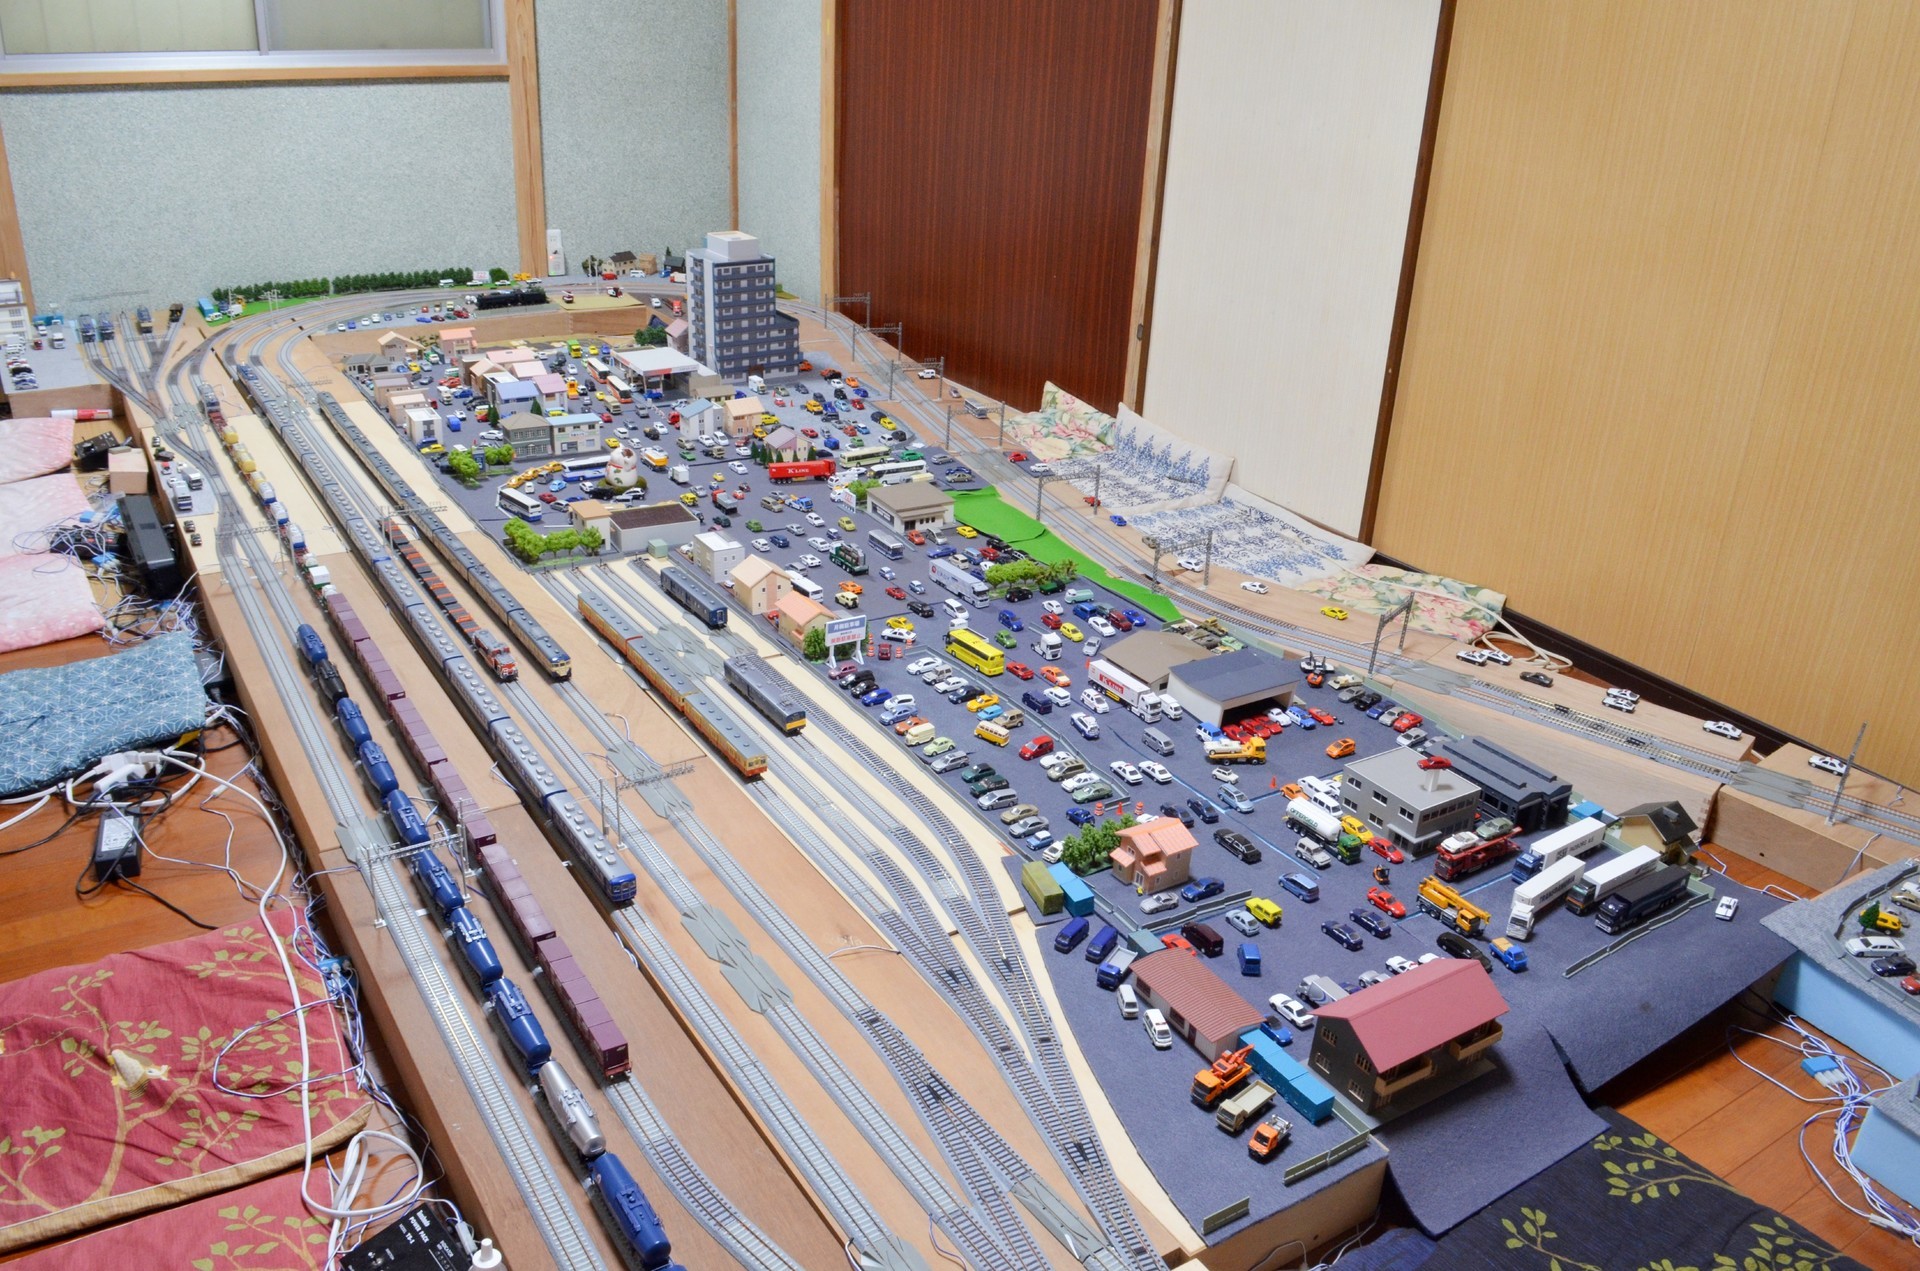 2021年線路配置 HOユニトラック 16番ゲージ鉄道模型: ゆるりと遊ぶ16番ゲージ鉄道模型